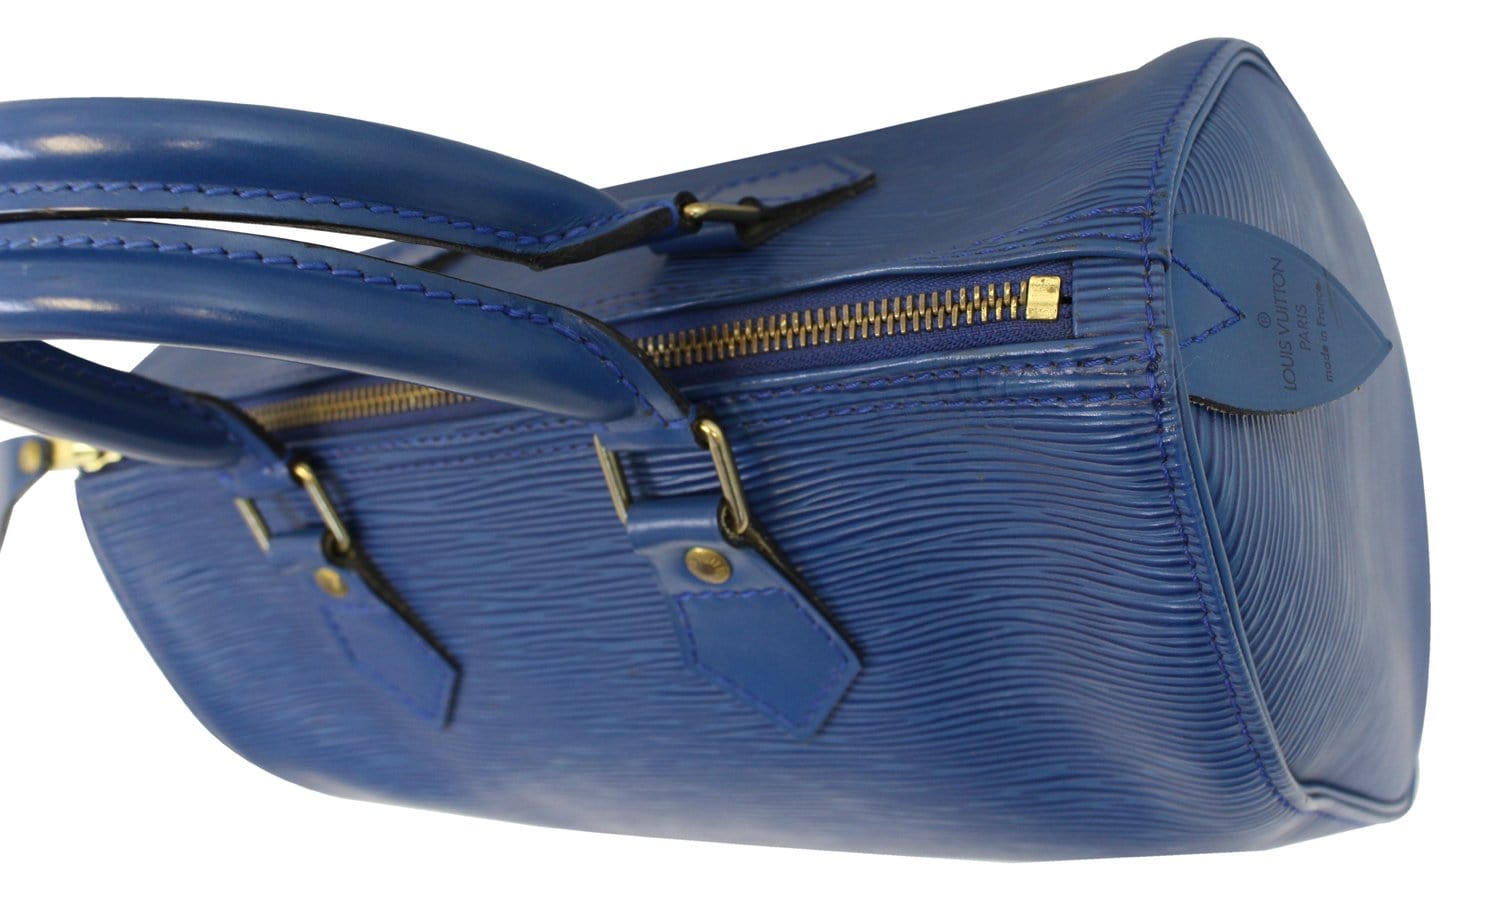 Louis Vuitton Speedy Bandouliere Bag Epi Leather 25 Blue